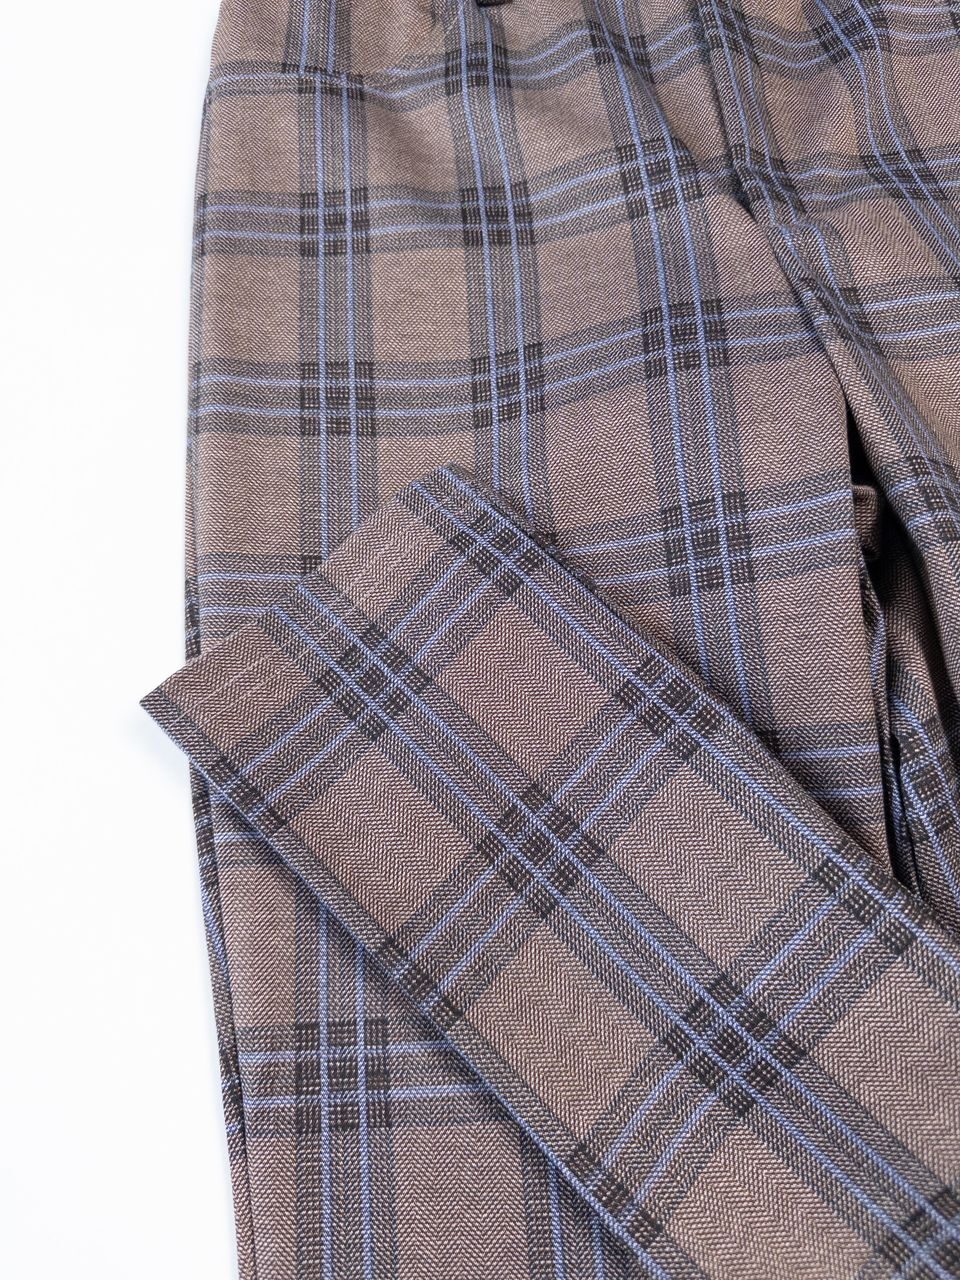 Брюки женские трикотажные из эластичной ткани в поясе резинка цвет коричневый/клетка размер EUR 38 M (rus 44) 24colours